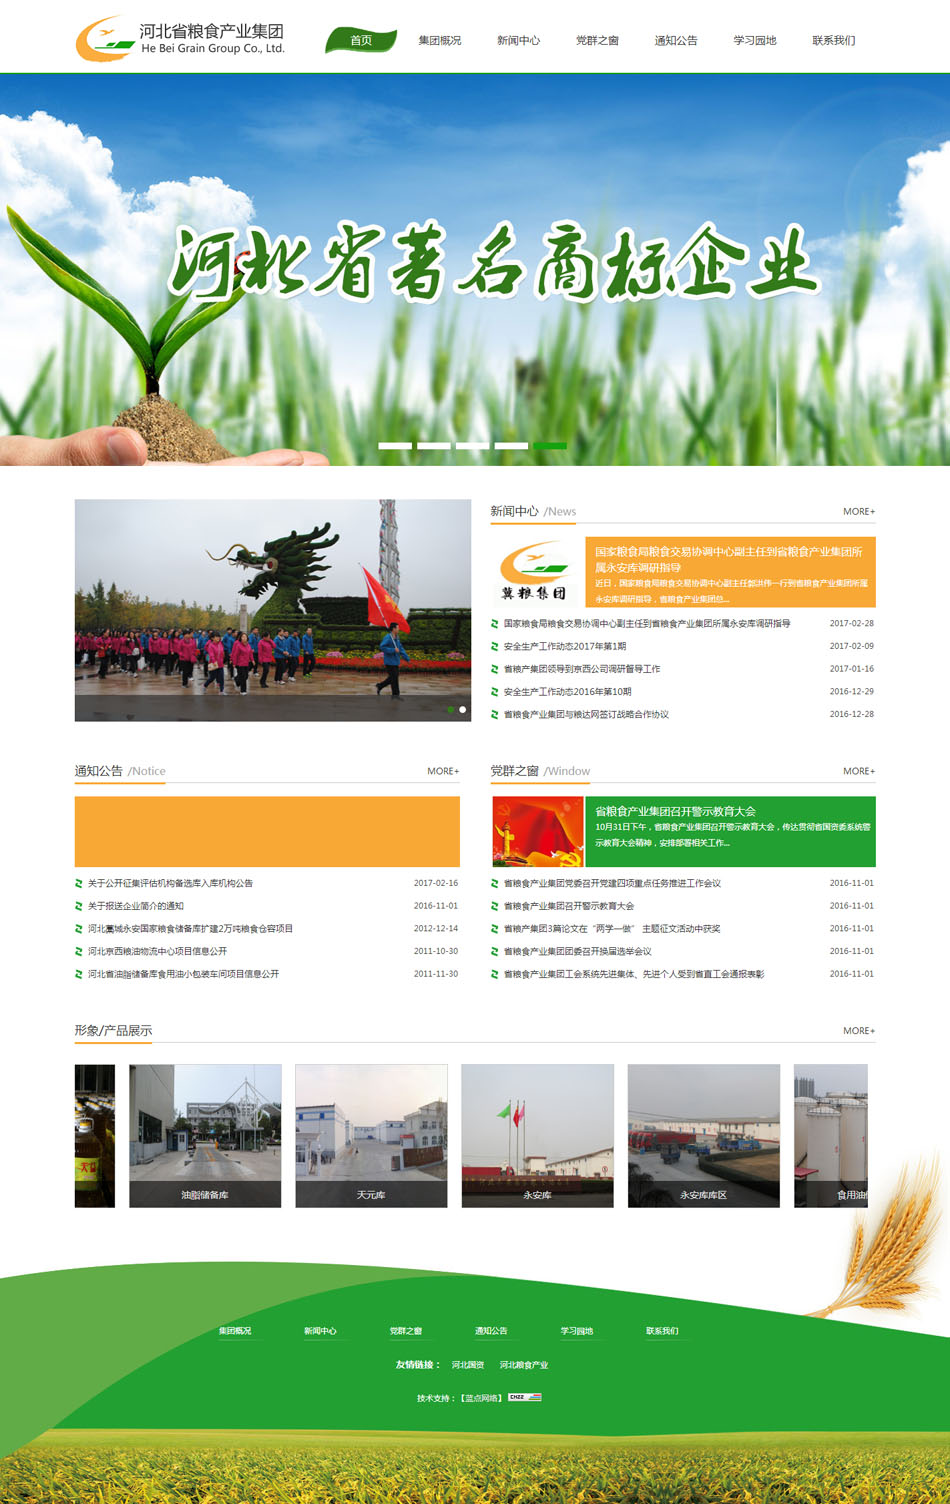 河北省粮食产业集团 政府 协会 石家庄网站制作 石家庄网站建设 网站设计开发 